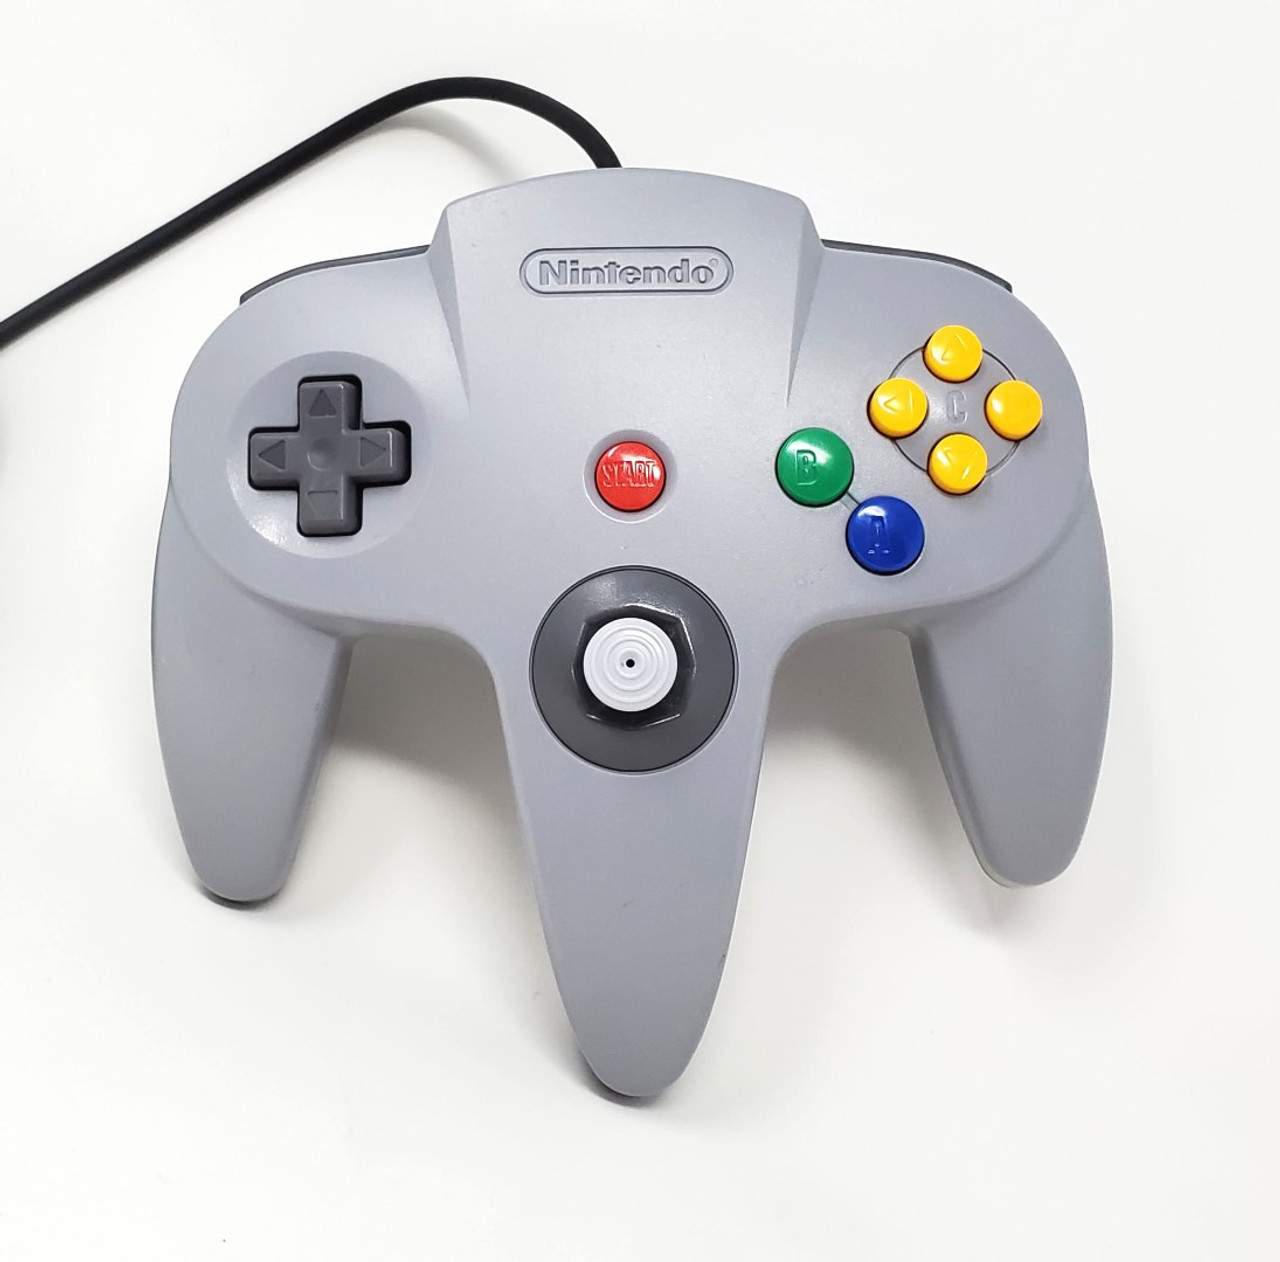 Nintendo 64 Original Controller - Gray (Very Condition) - Stone Gamer